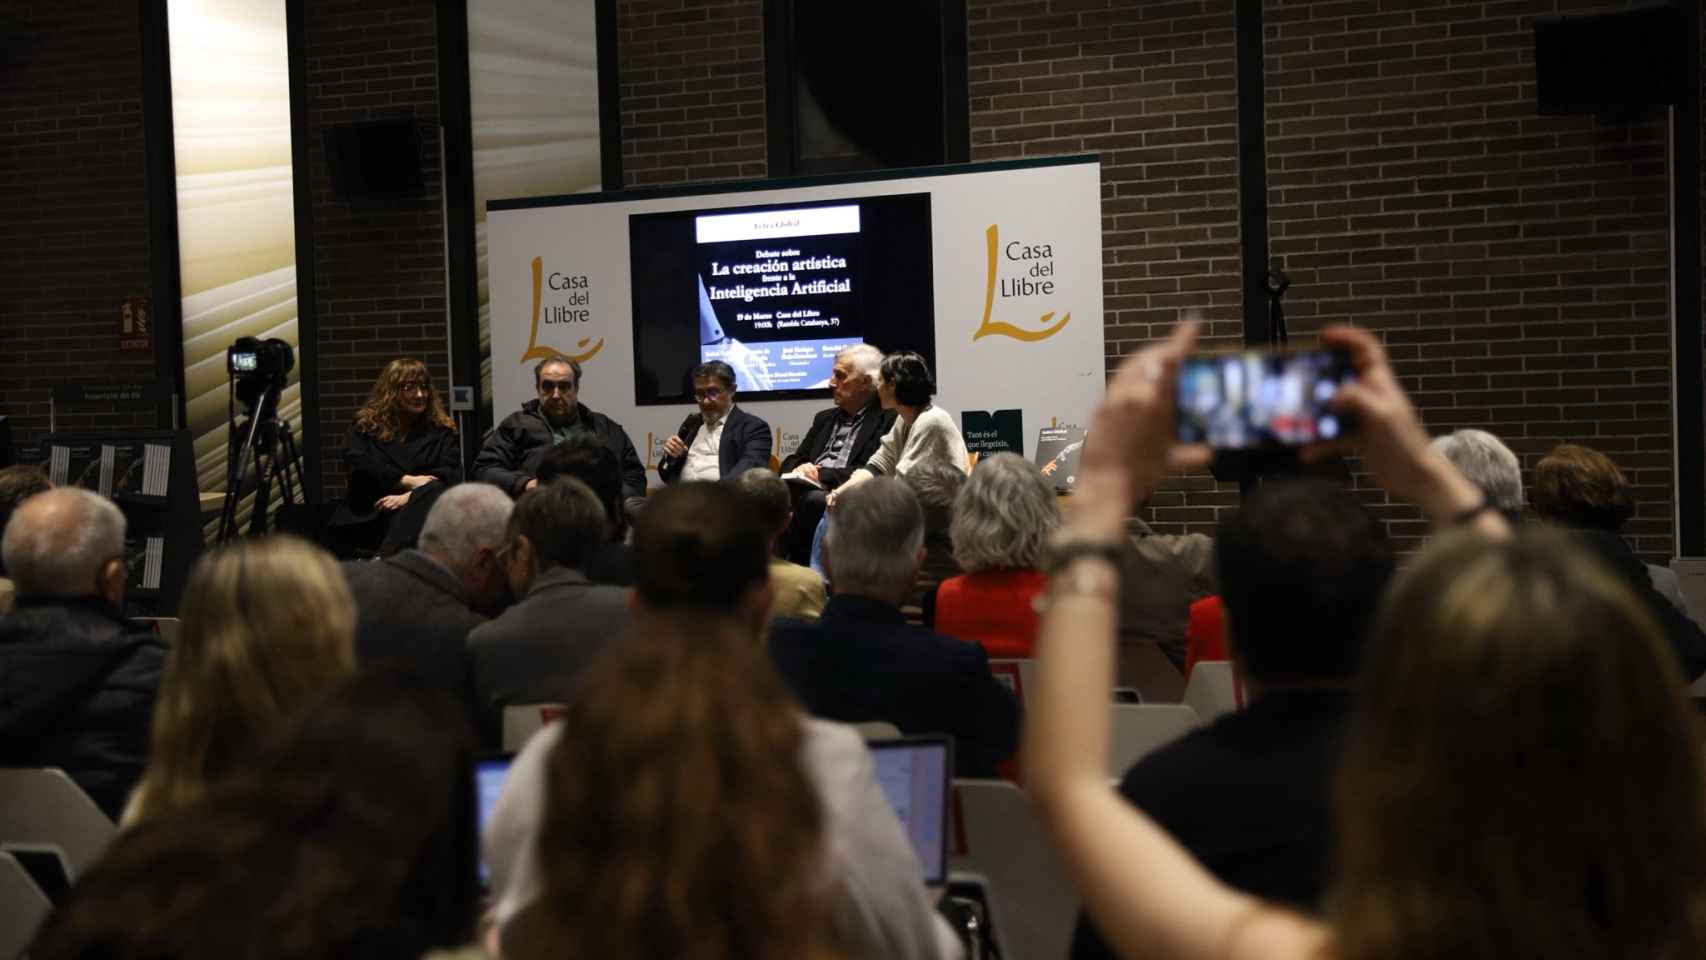 Imagen del público en el acto de 'Letra Global' en La Casa del Libro